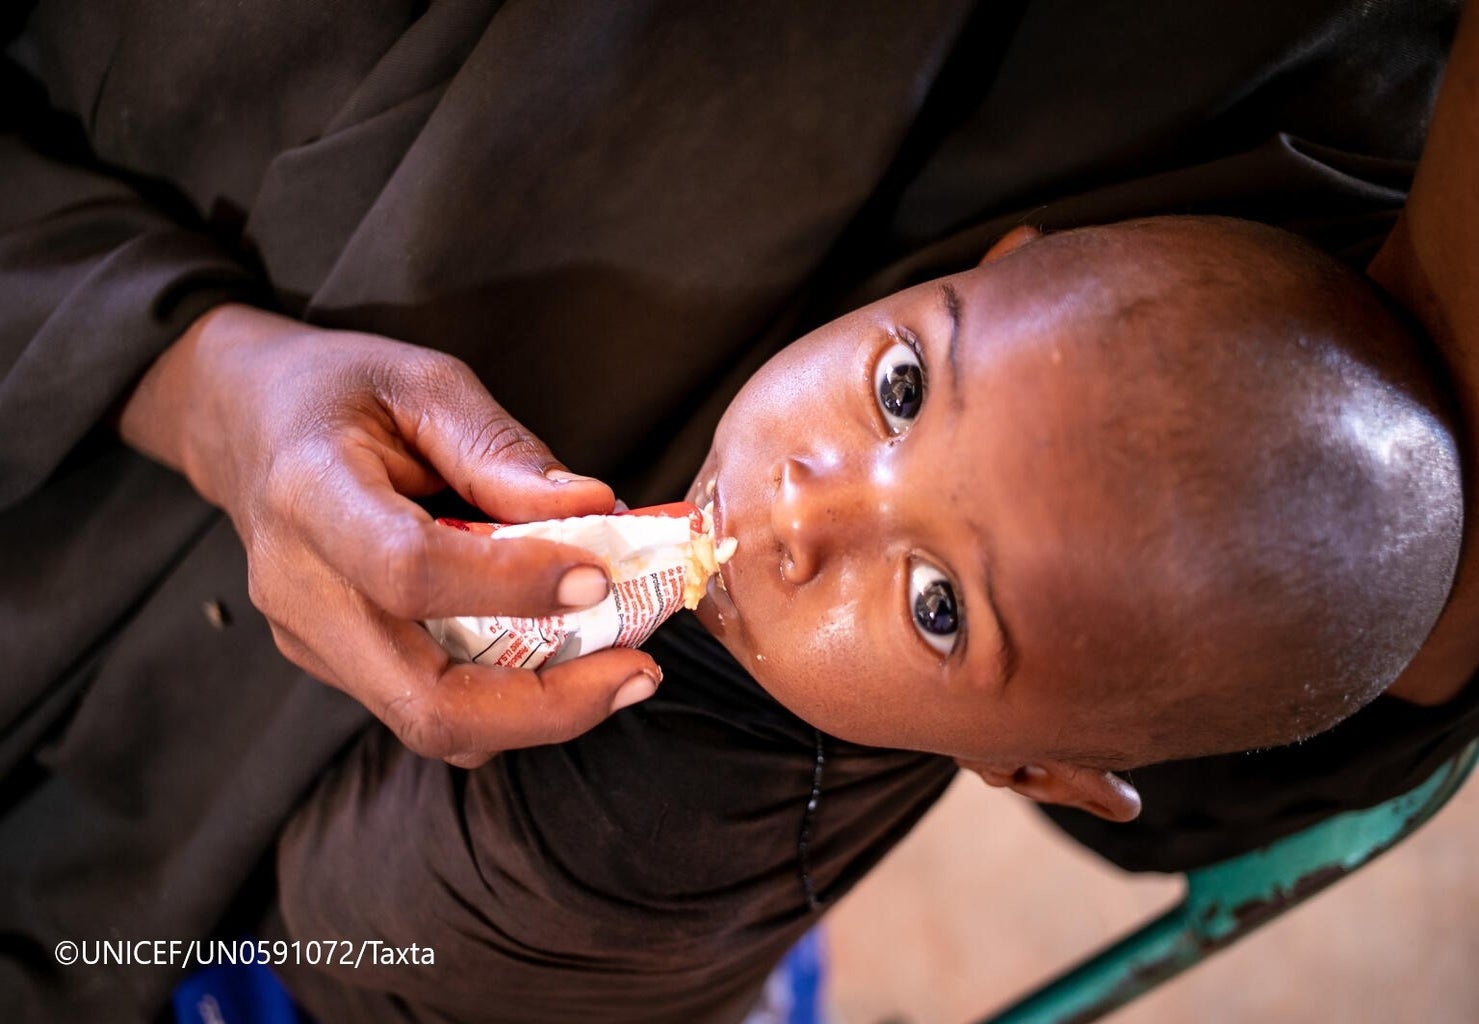 ドロー避難民キャンプ内にある保健センターで、ユニセフ支援物資の栄養補助食を食べる幼い子ども。（ソマリア、2022年2月3日撮影）©UNICEF_UN0591072_Taxta